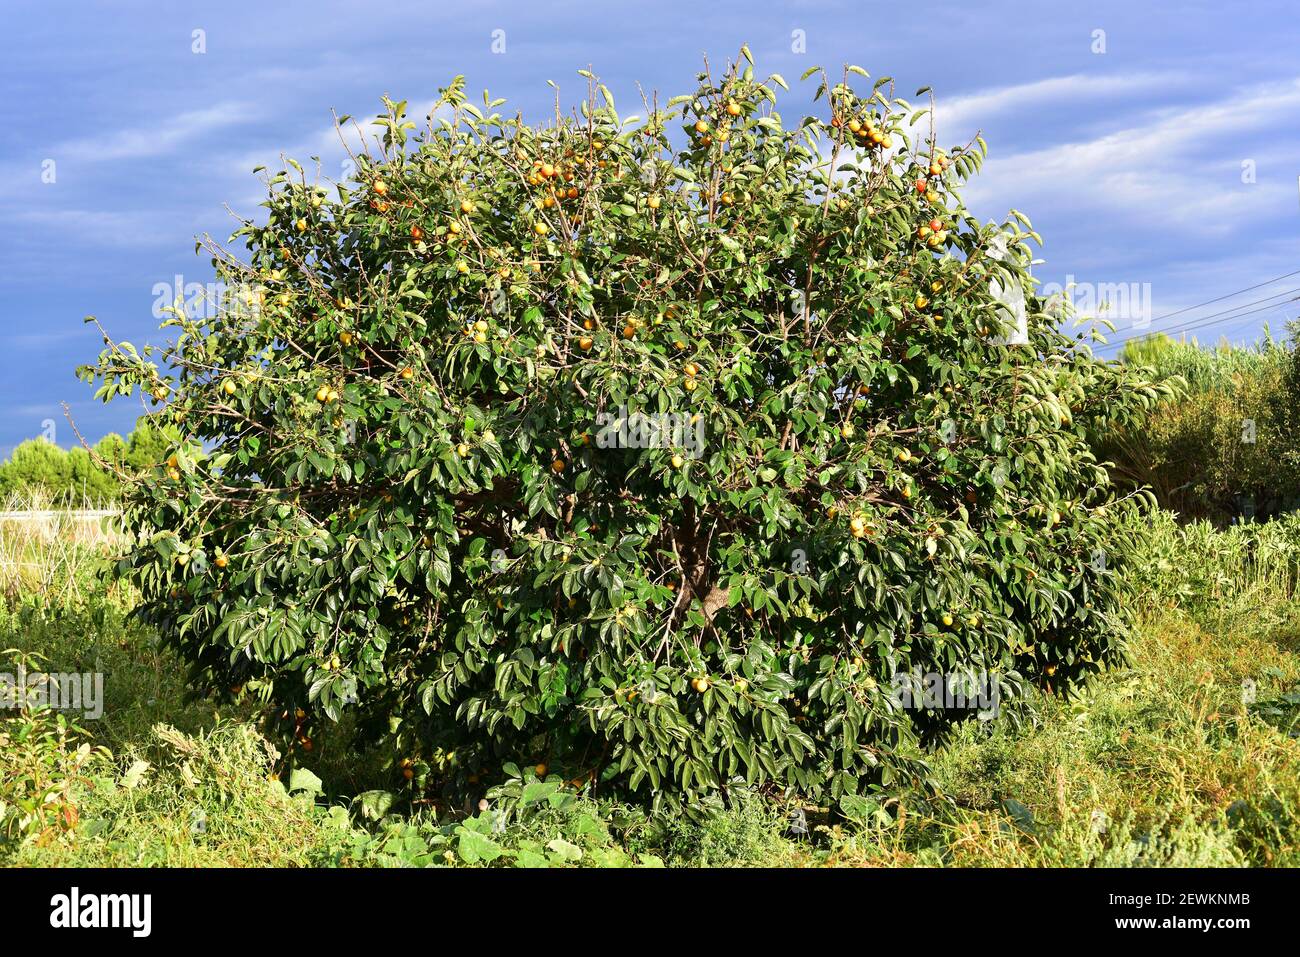 Chinesischer Persimmon oder orientalischer Persimmon (Diospyros kaki) ist ein Laubbaum aus Asien, der für seine essbaren Früchte weit verbreitet ist. Dieses Foto Stockfoto